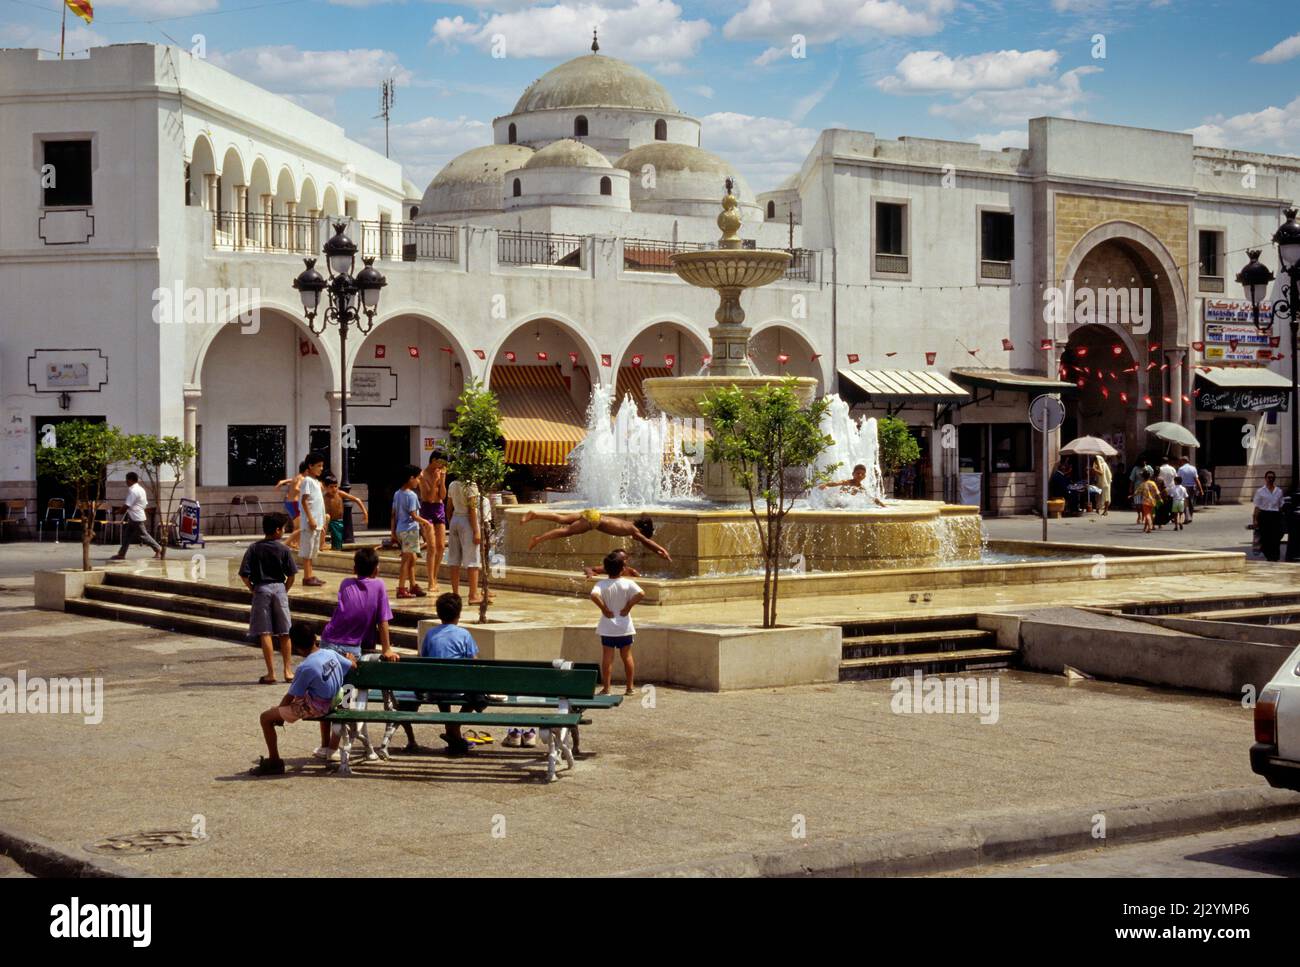 Tunis, Tunesien.  Sidi Mehrez Moschee (1675-92), aus dem Ort Bab Souika.  Kinder spielen in Nachbarschaft Brunnen.  Bab Souika Eingang zur Medina auf rechten Seite. Stockfoto